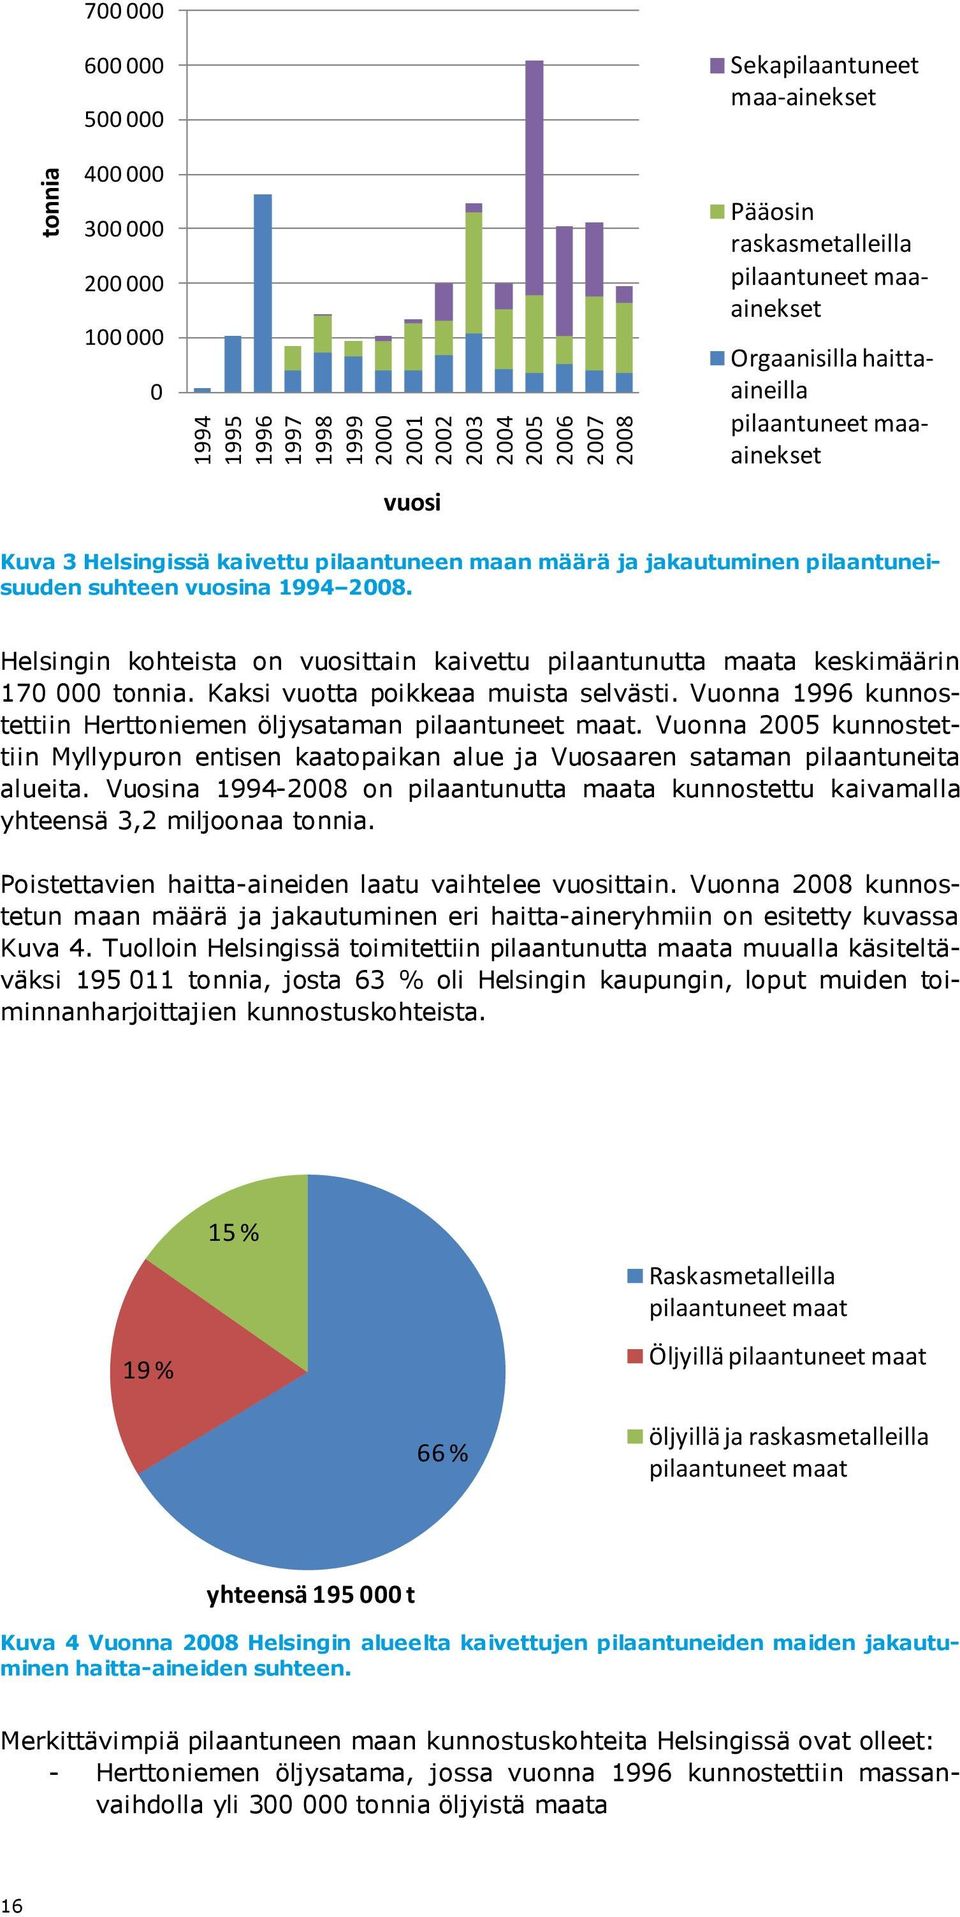 Helsingin kohteista on vuosittain kaivettu pilaantunutta maata keskimäärin 170 000 tonnia. Kaksi vuotta poikkeaa muista selvästi. Vuonna 1996 kunnostettiin Herttoniemen öljysataman pilaantuneet maat.